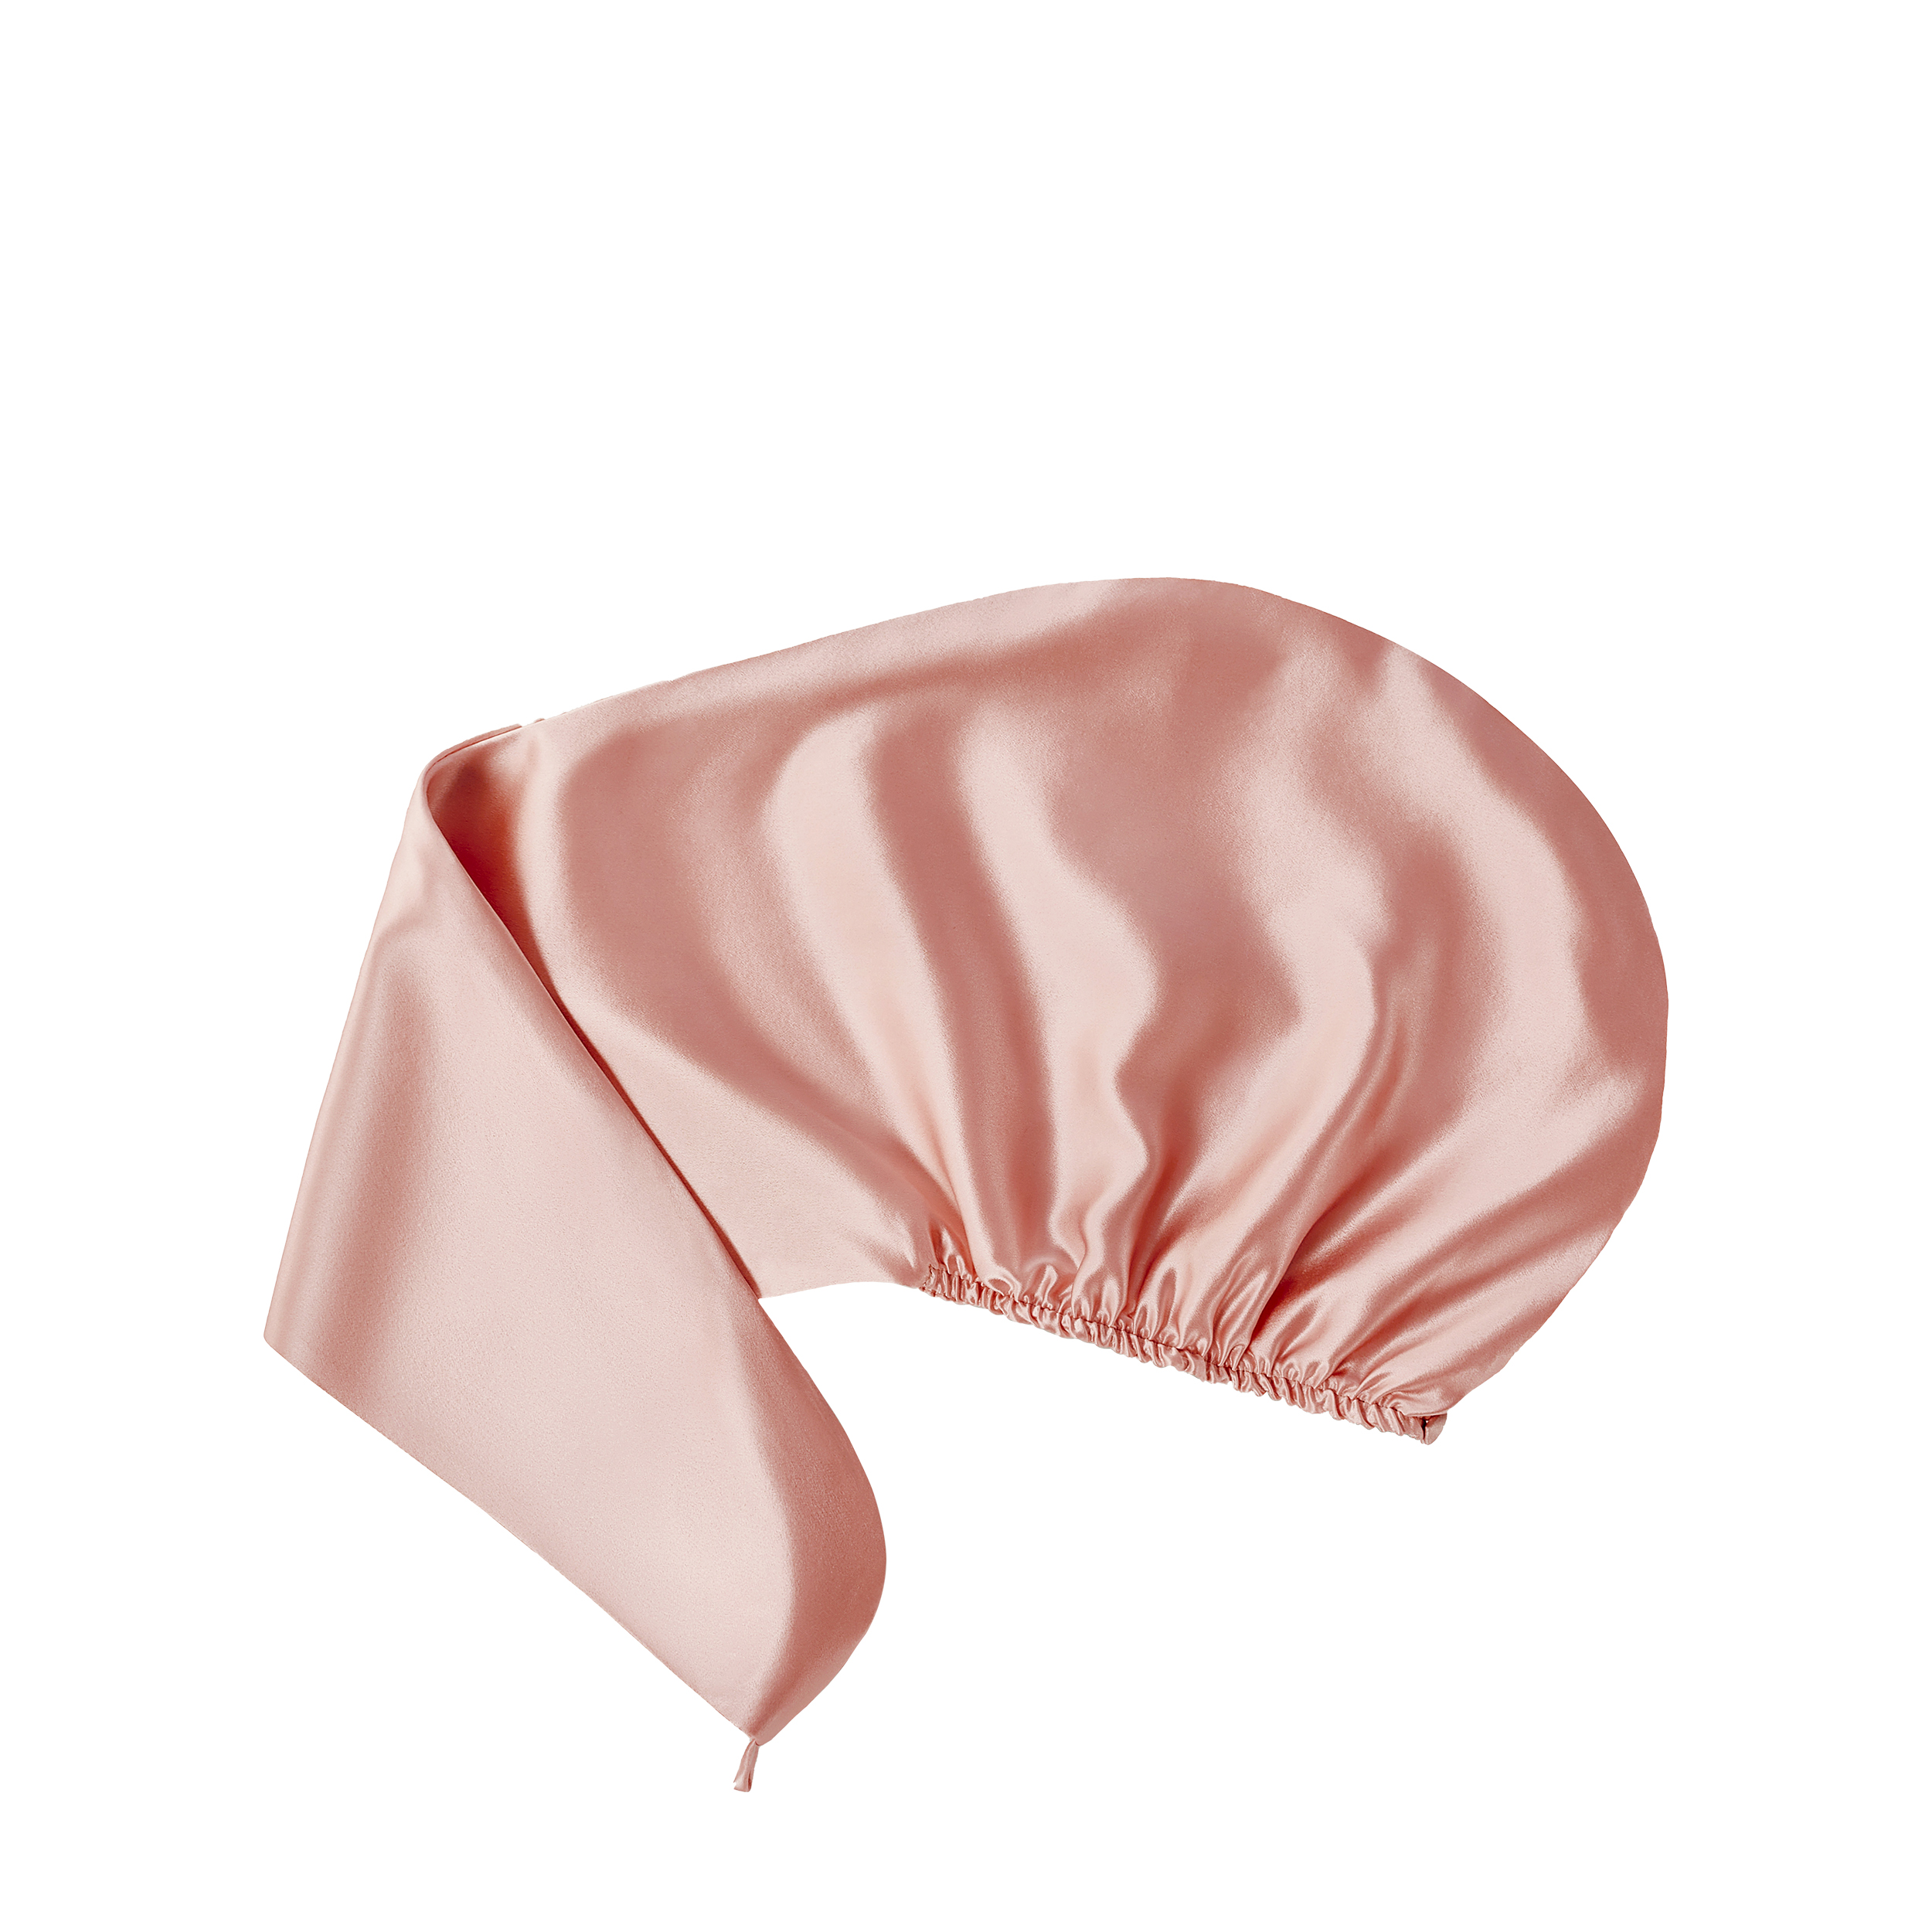 AYRIS SILK AYRIS SILK Полотенце-тюрбан Ayris Silk  из натурального шёлка, арт. 5013, цвет розовая пудра (155x220)